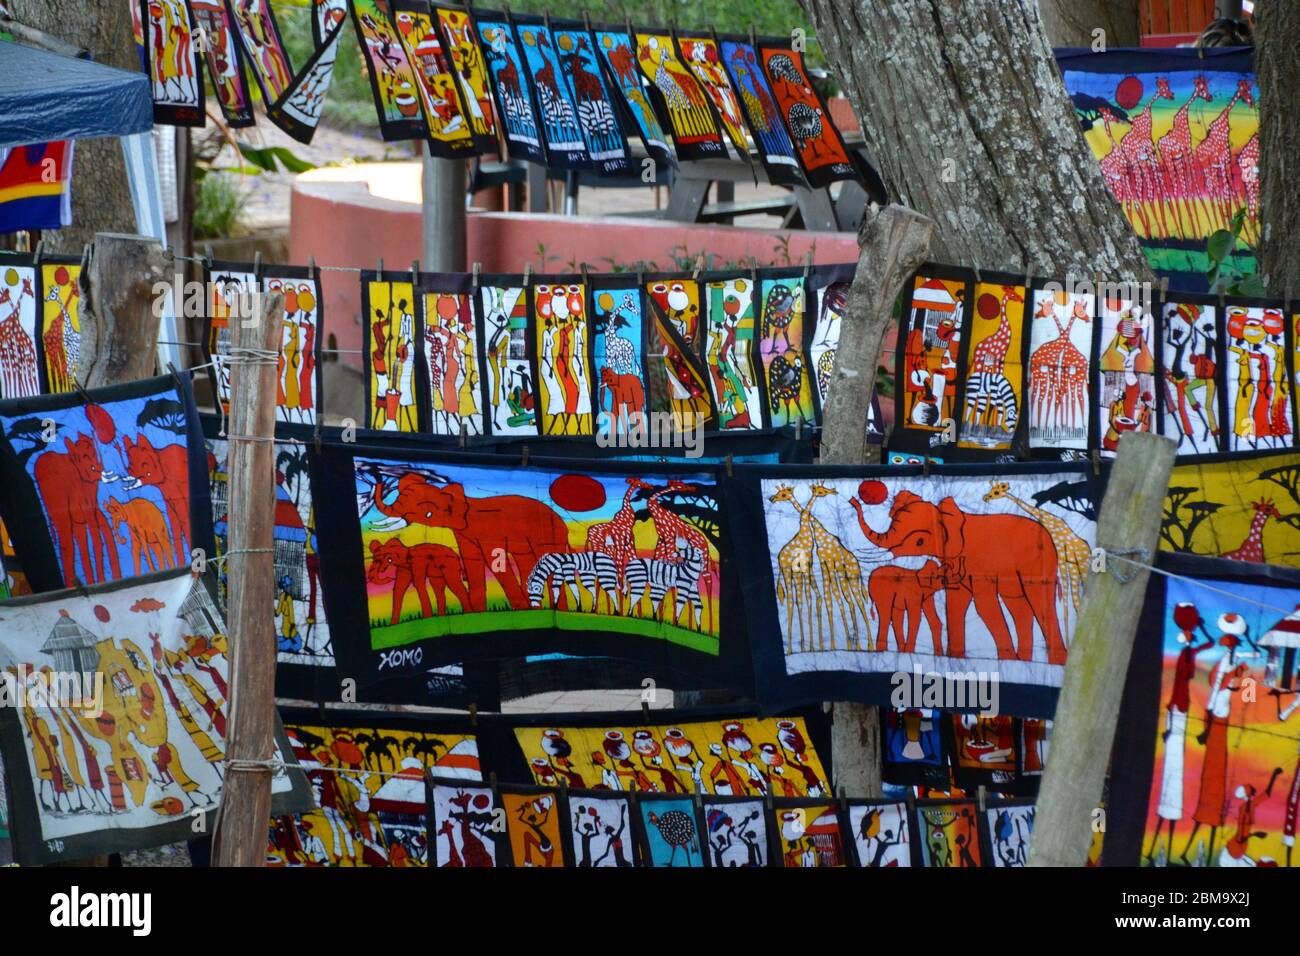 Telas coloridas y grabados en un mercado al aire libre en Eswatini (Swazilandia) con referencias culturales y animales africanos Foto de stock